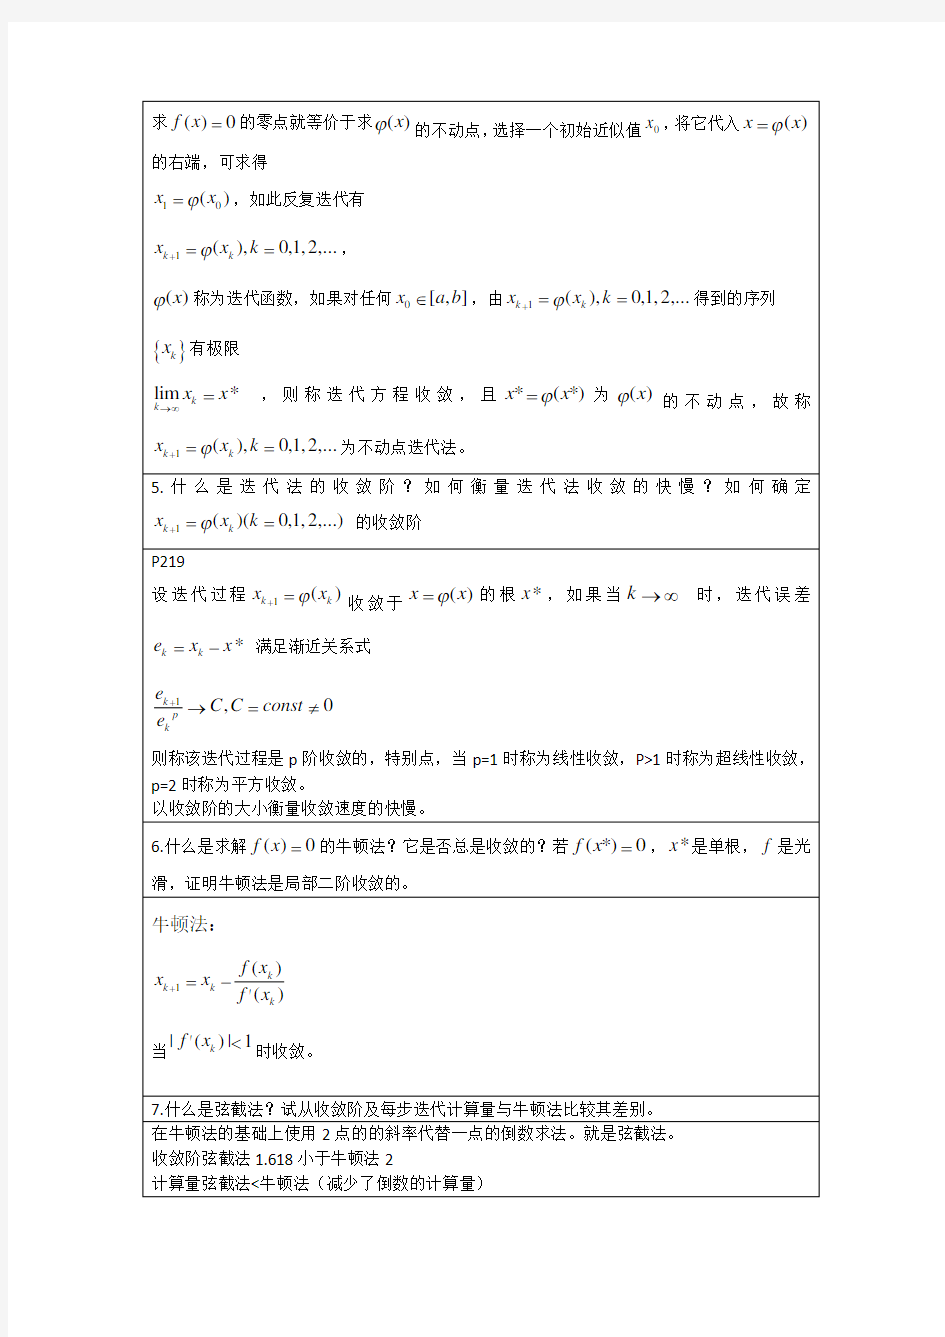 李庆扬-数值分析第五版第7章习题答案(20130824)